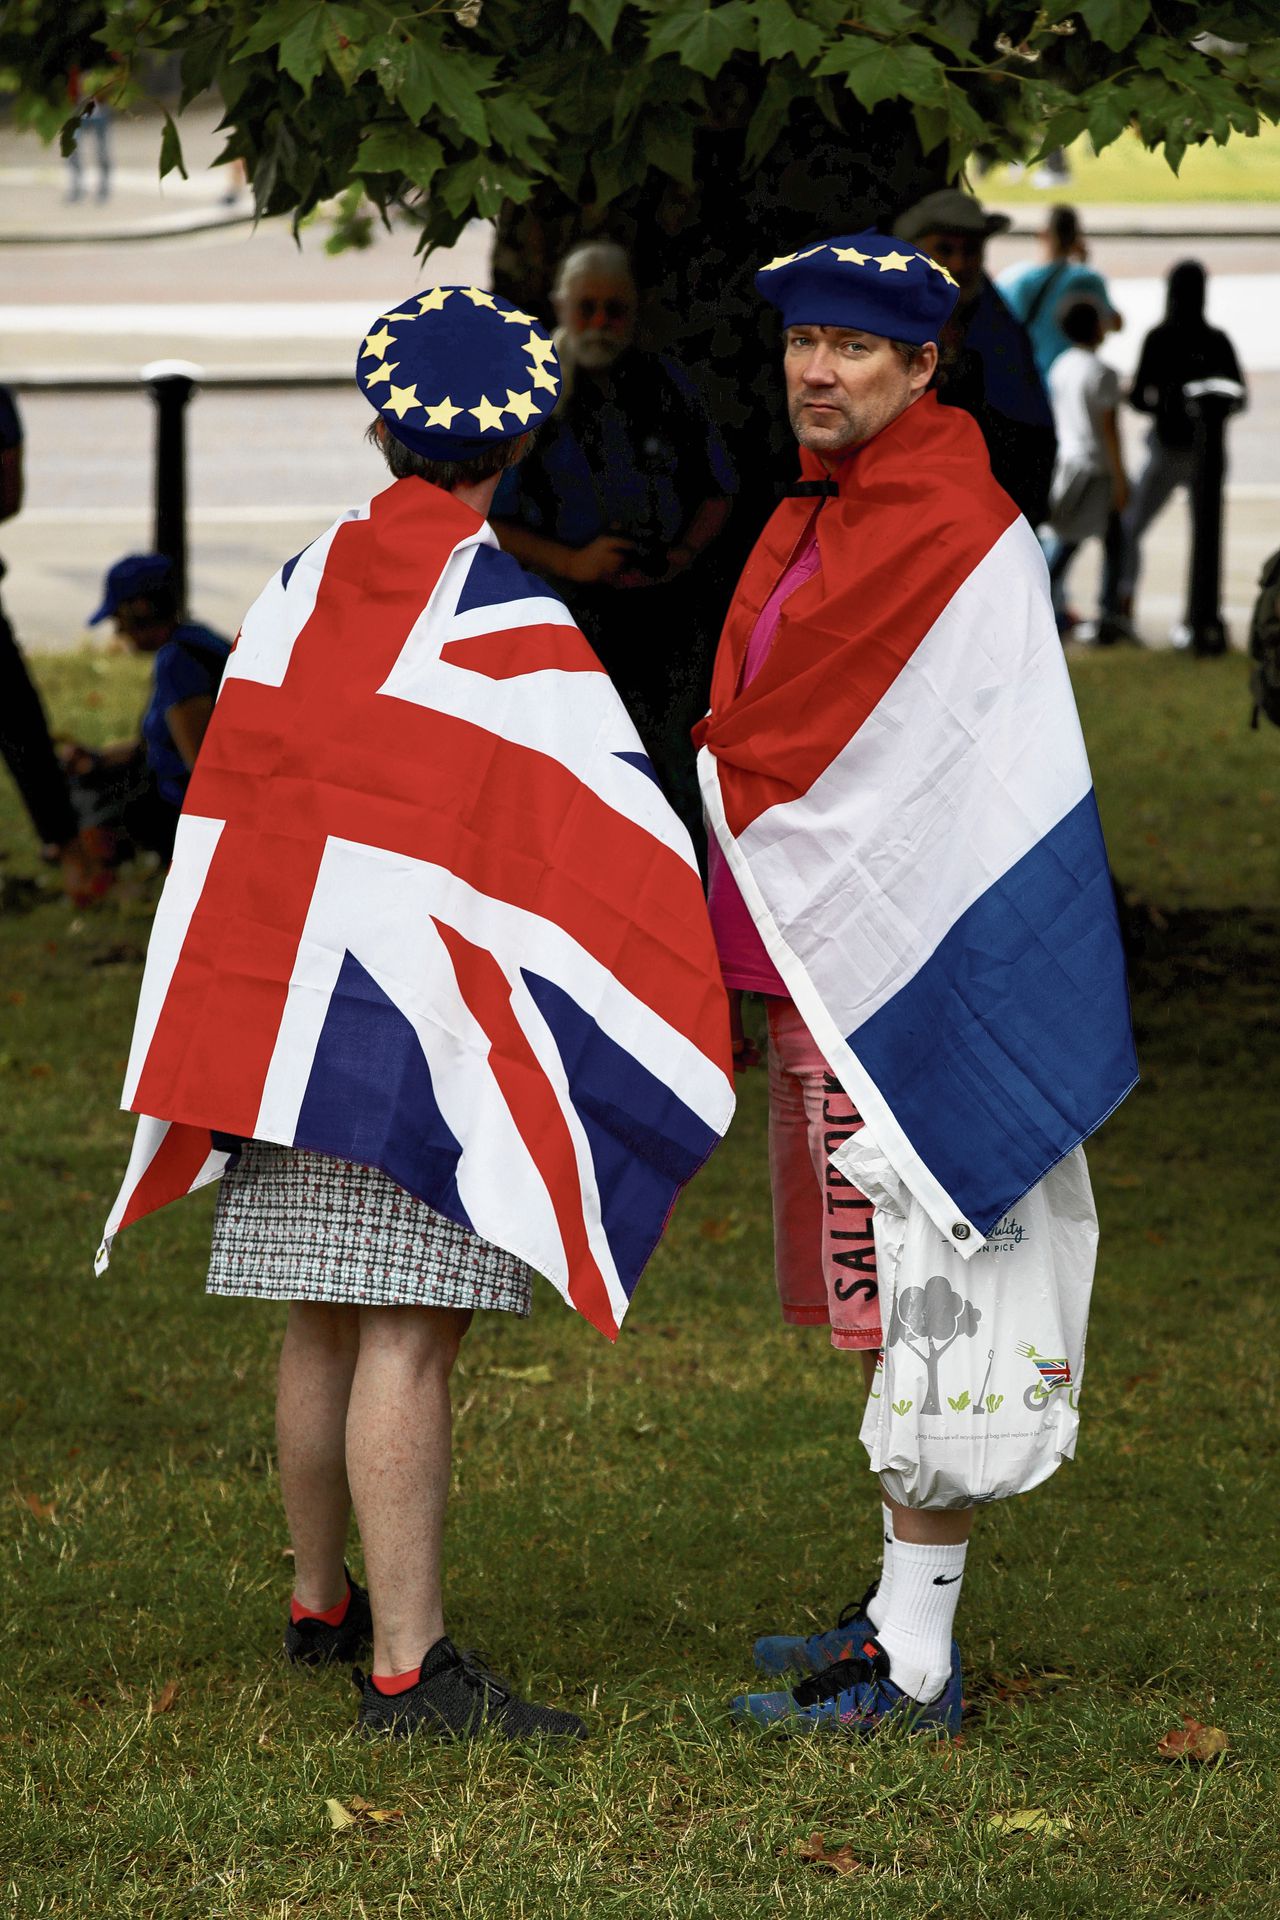 Debbie Southerton, Engels, en haar Nederlandse partner Jan De Jonge, wonen in Wiltshire een anti-Brexit demonstratie bij.